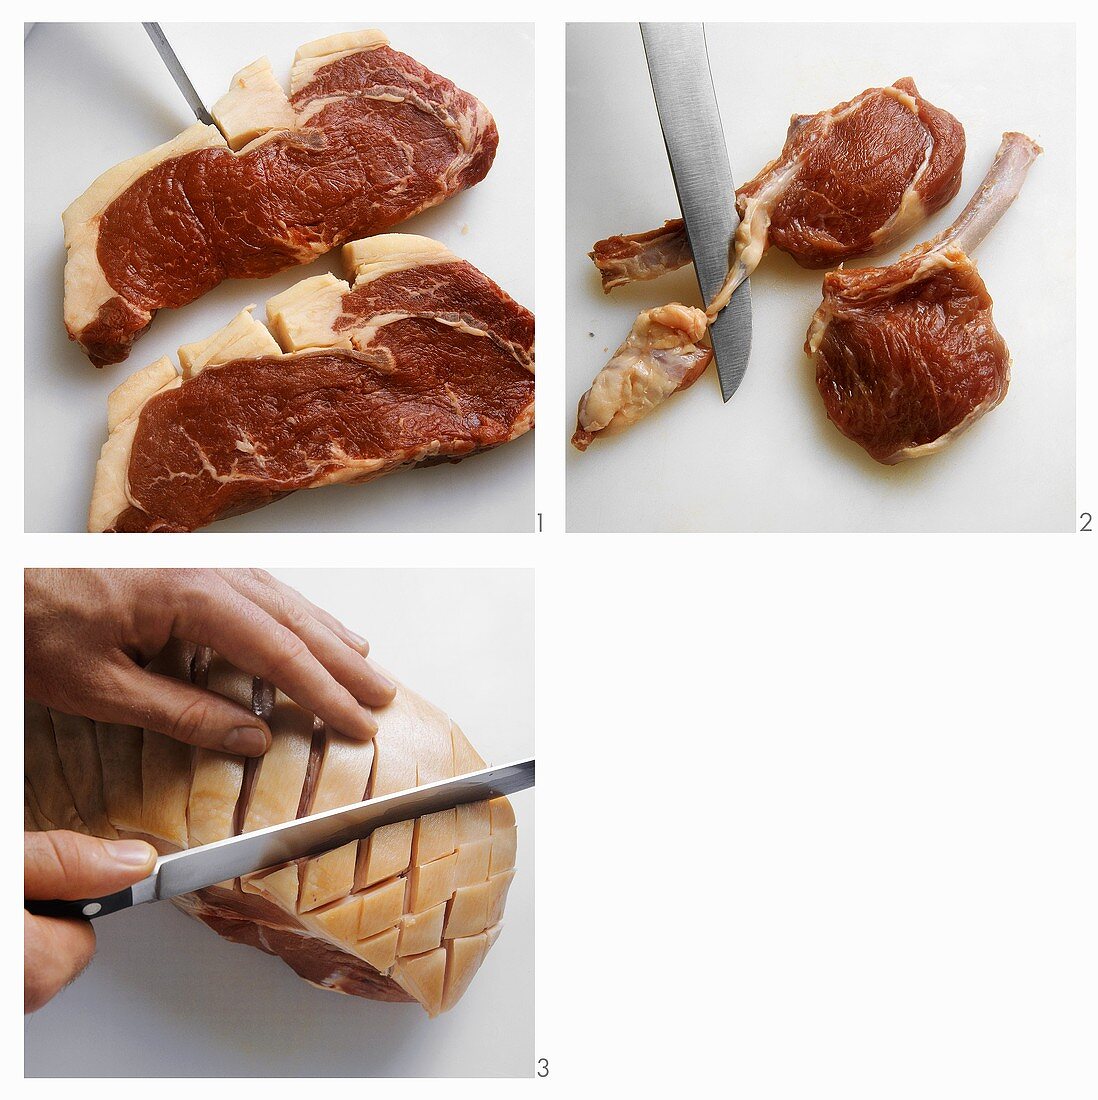 Scoring the skin (sirloin steak, chops, joint of pork)